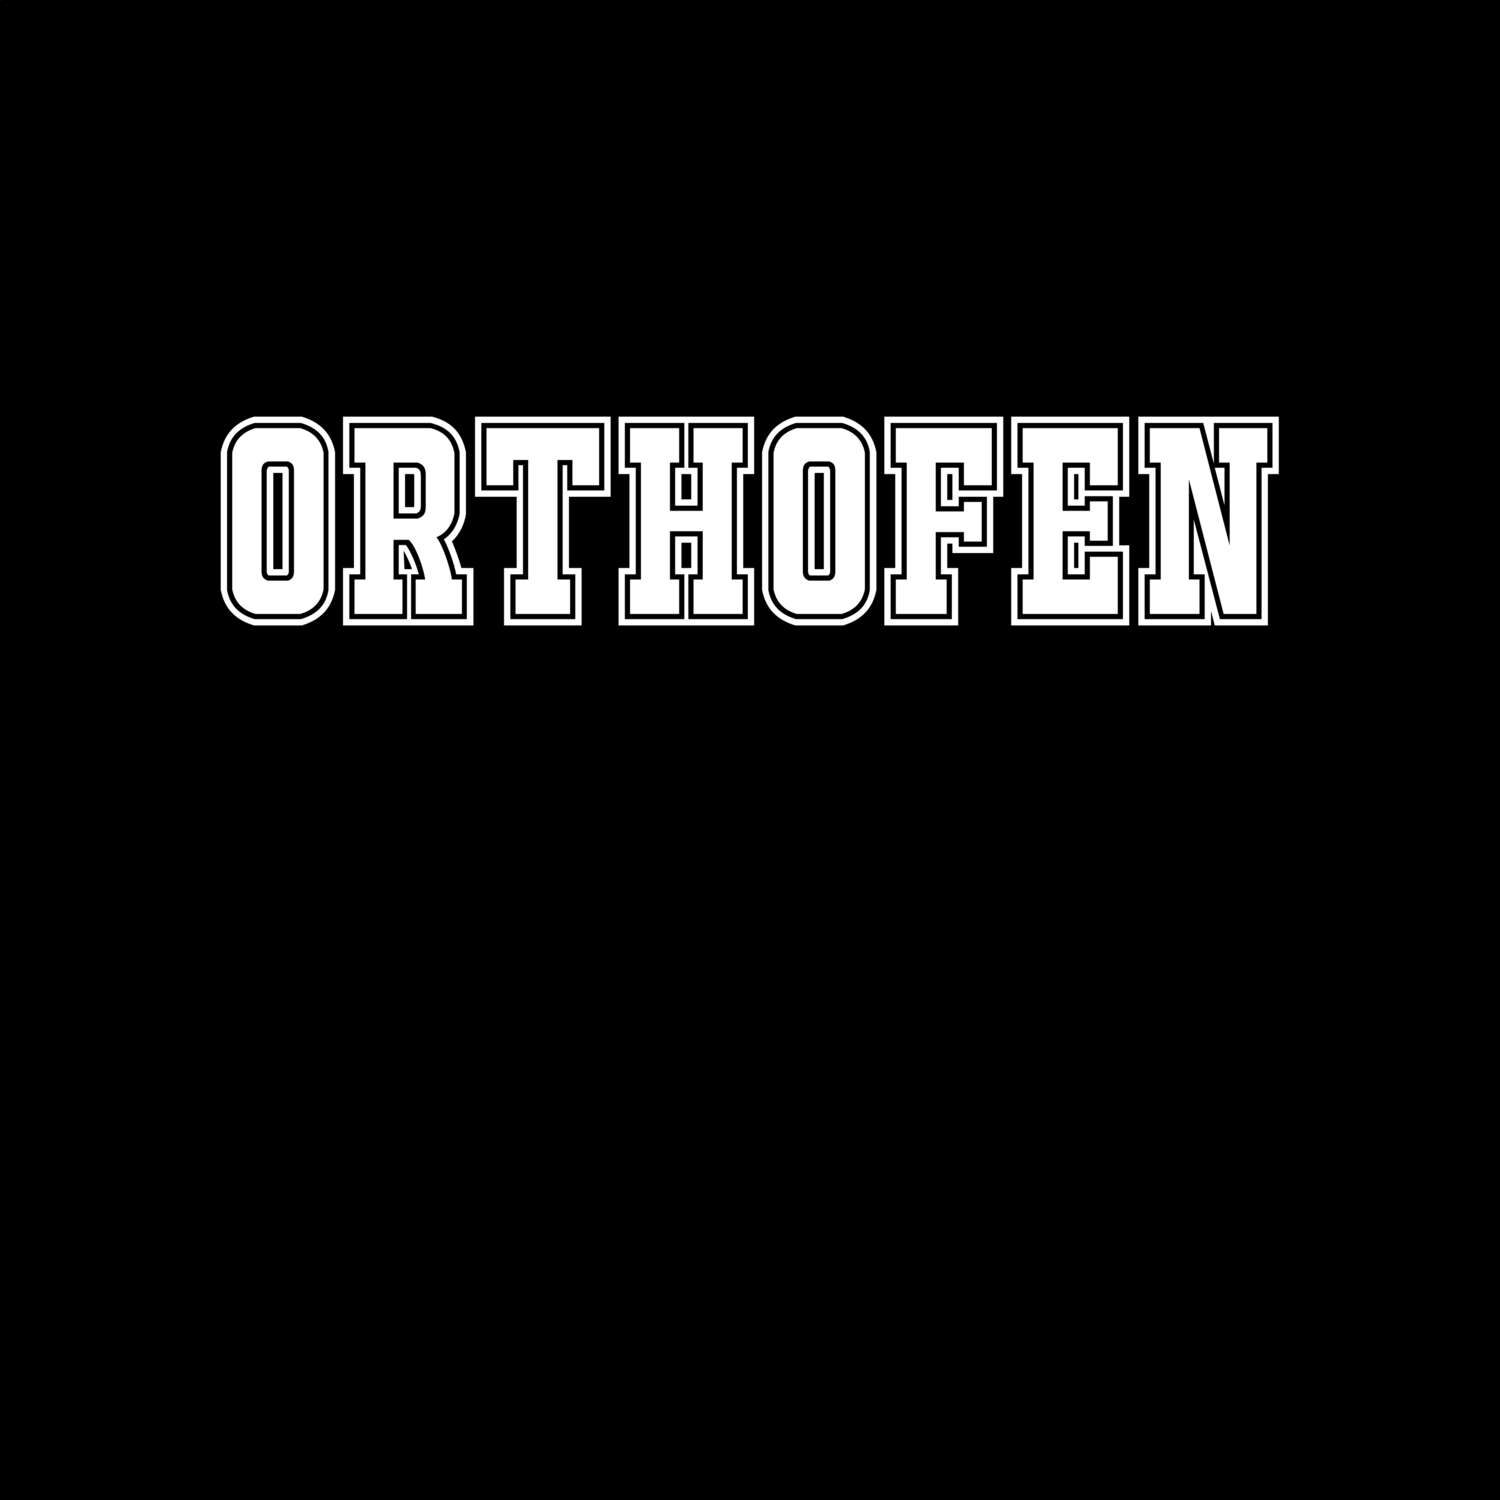 Orthofen T-Shirt »Classic«